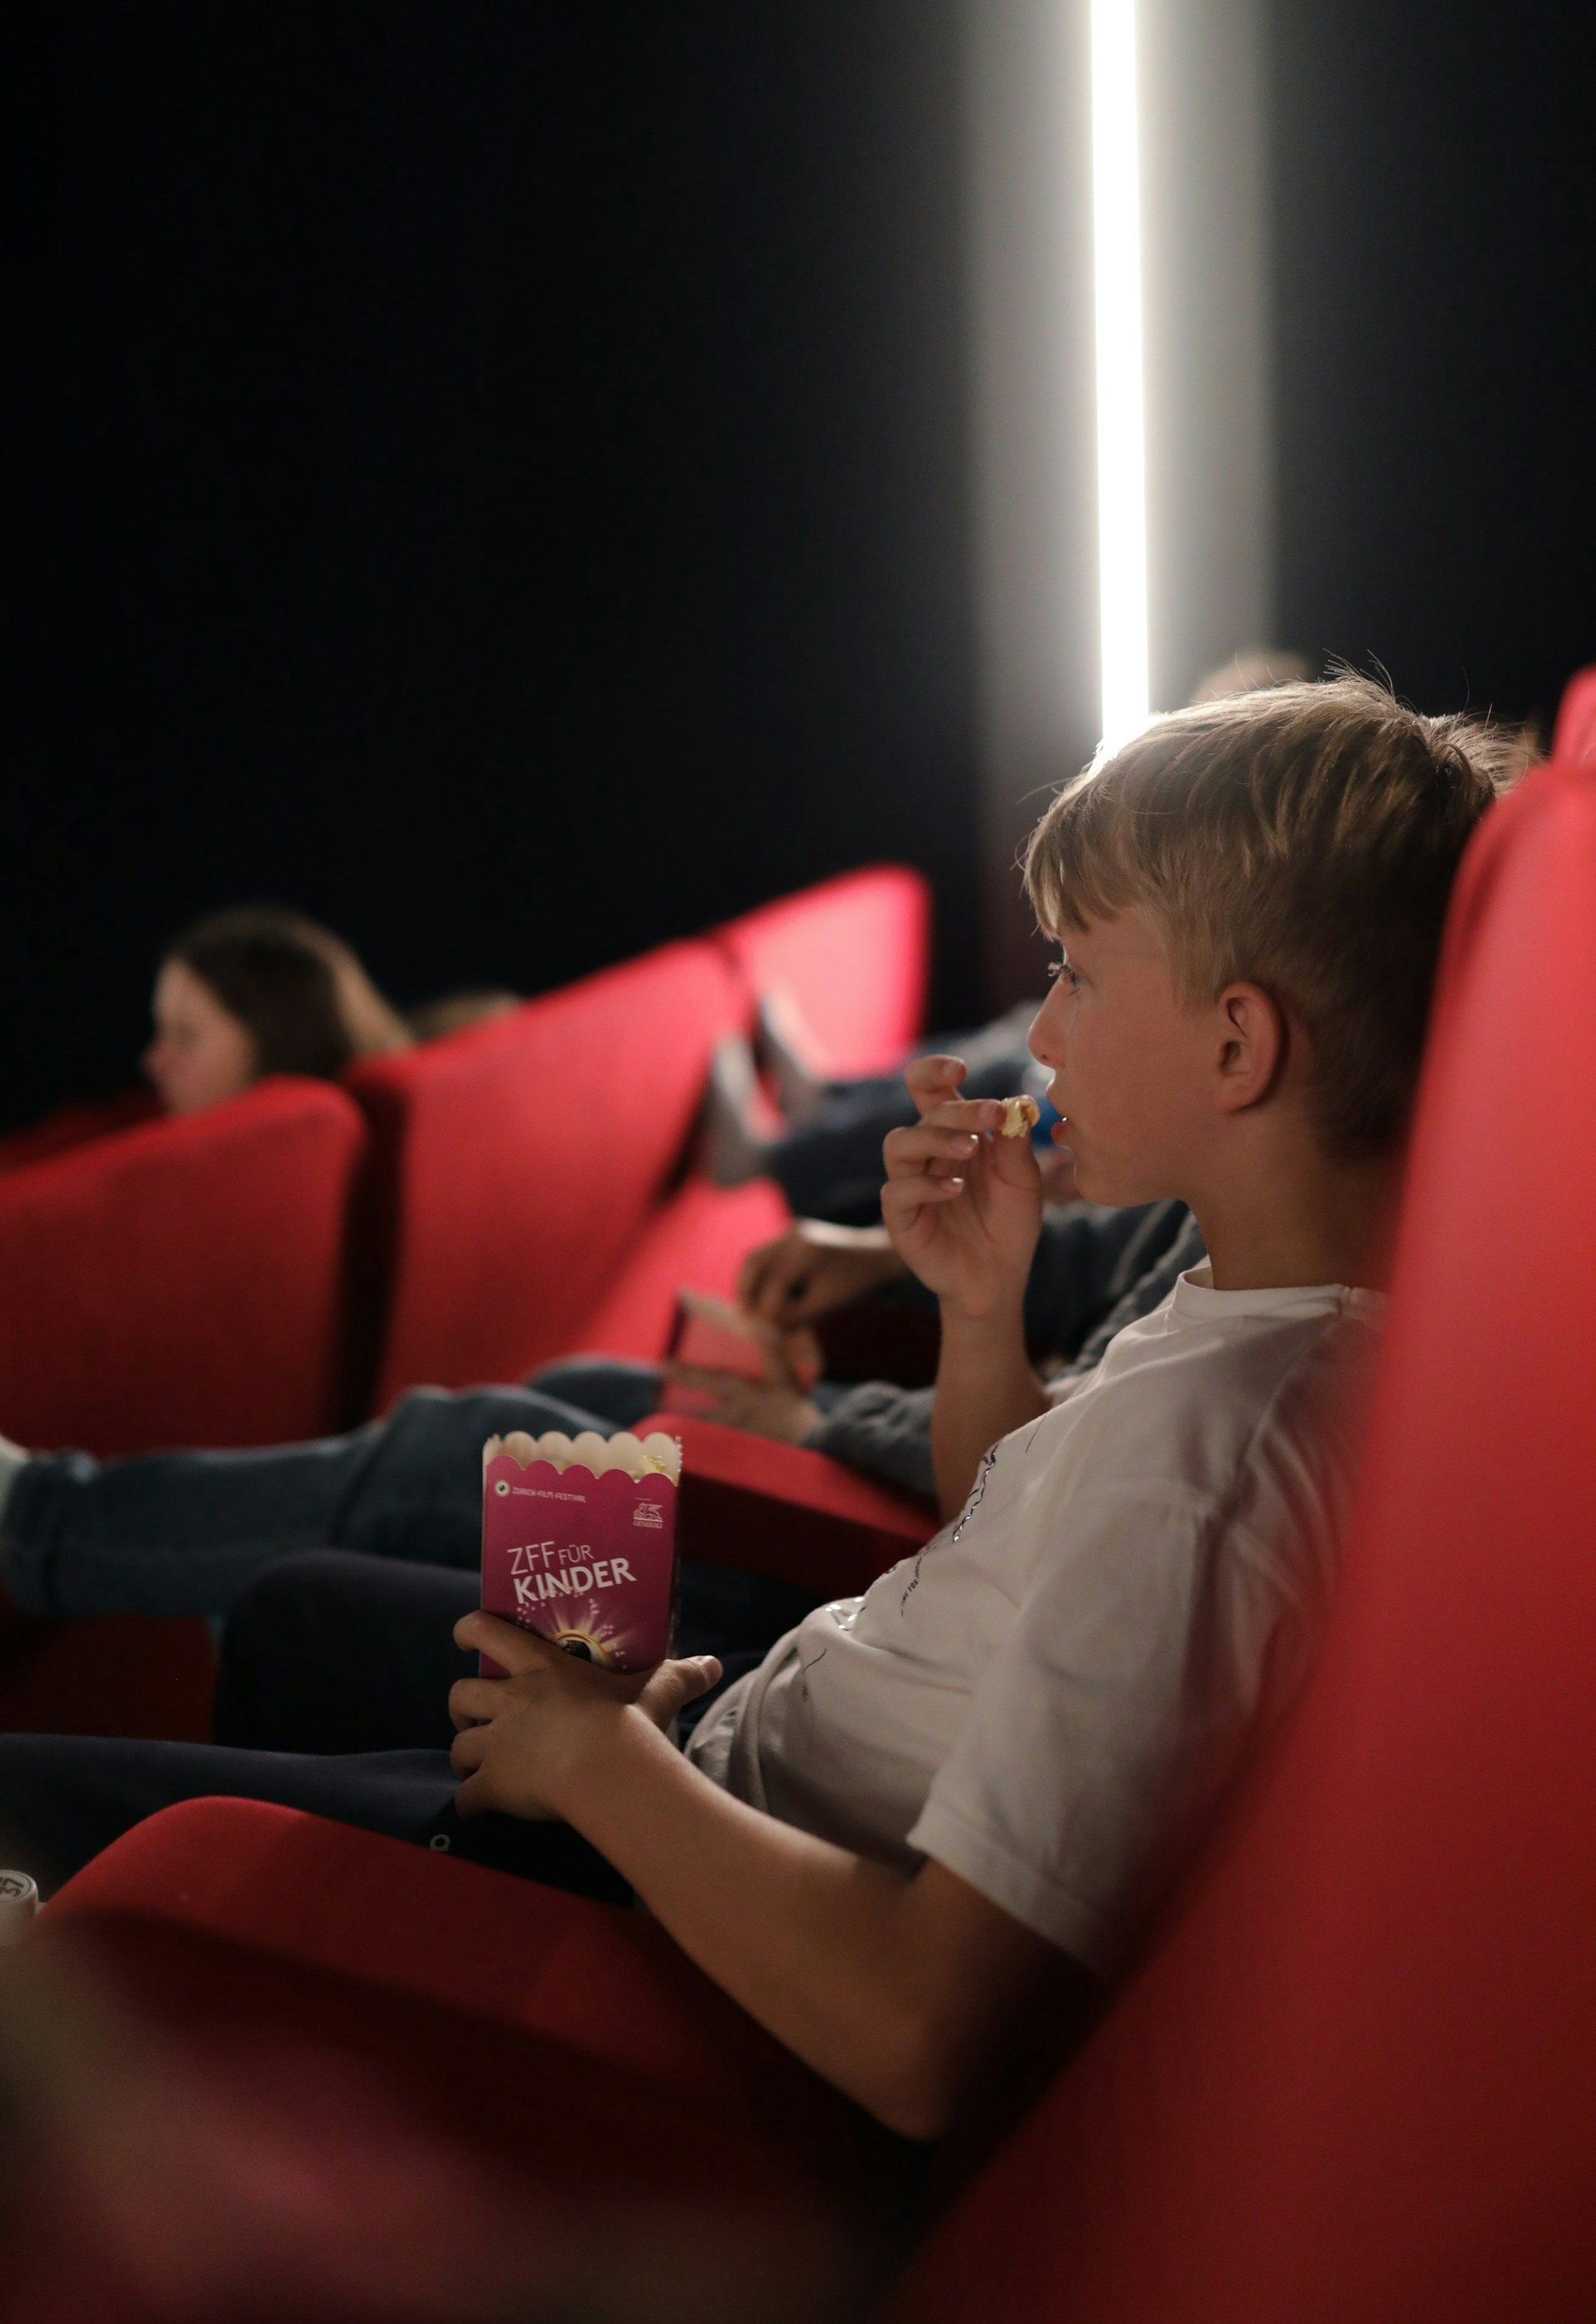 Enfants dans une salle de cinéma. Ils mangent du pop-corn